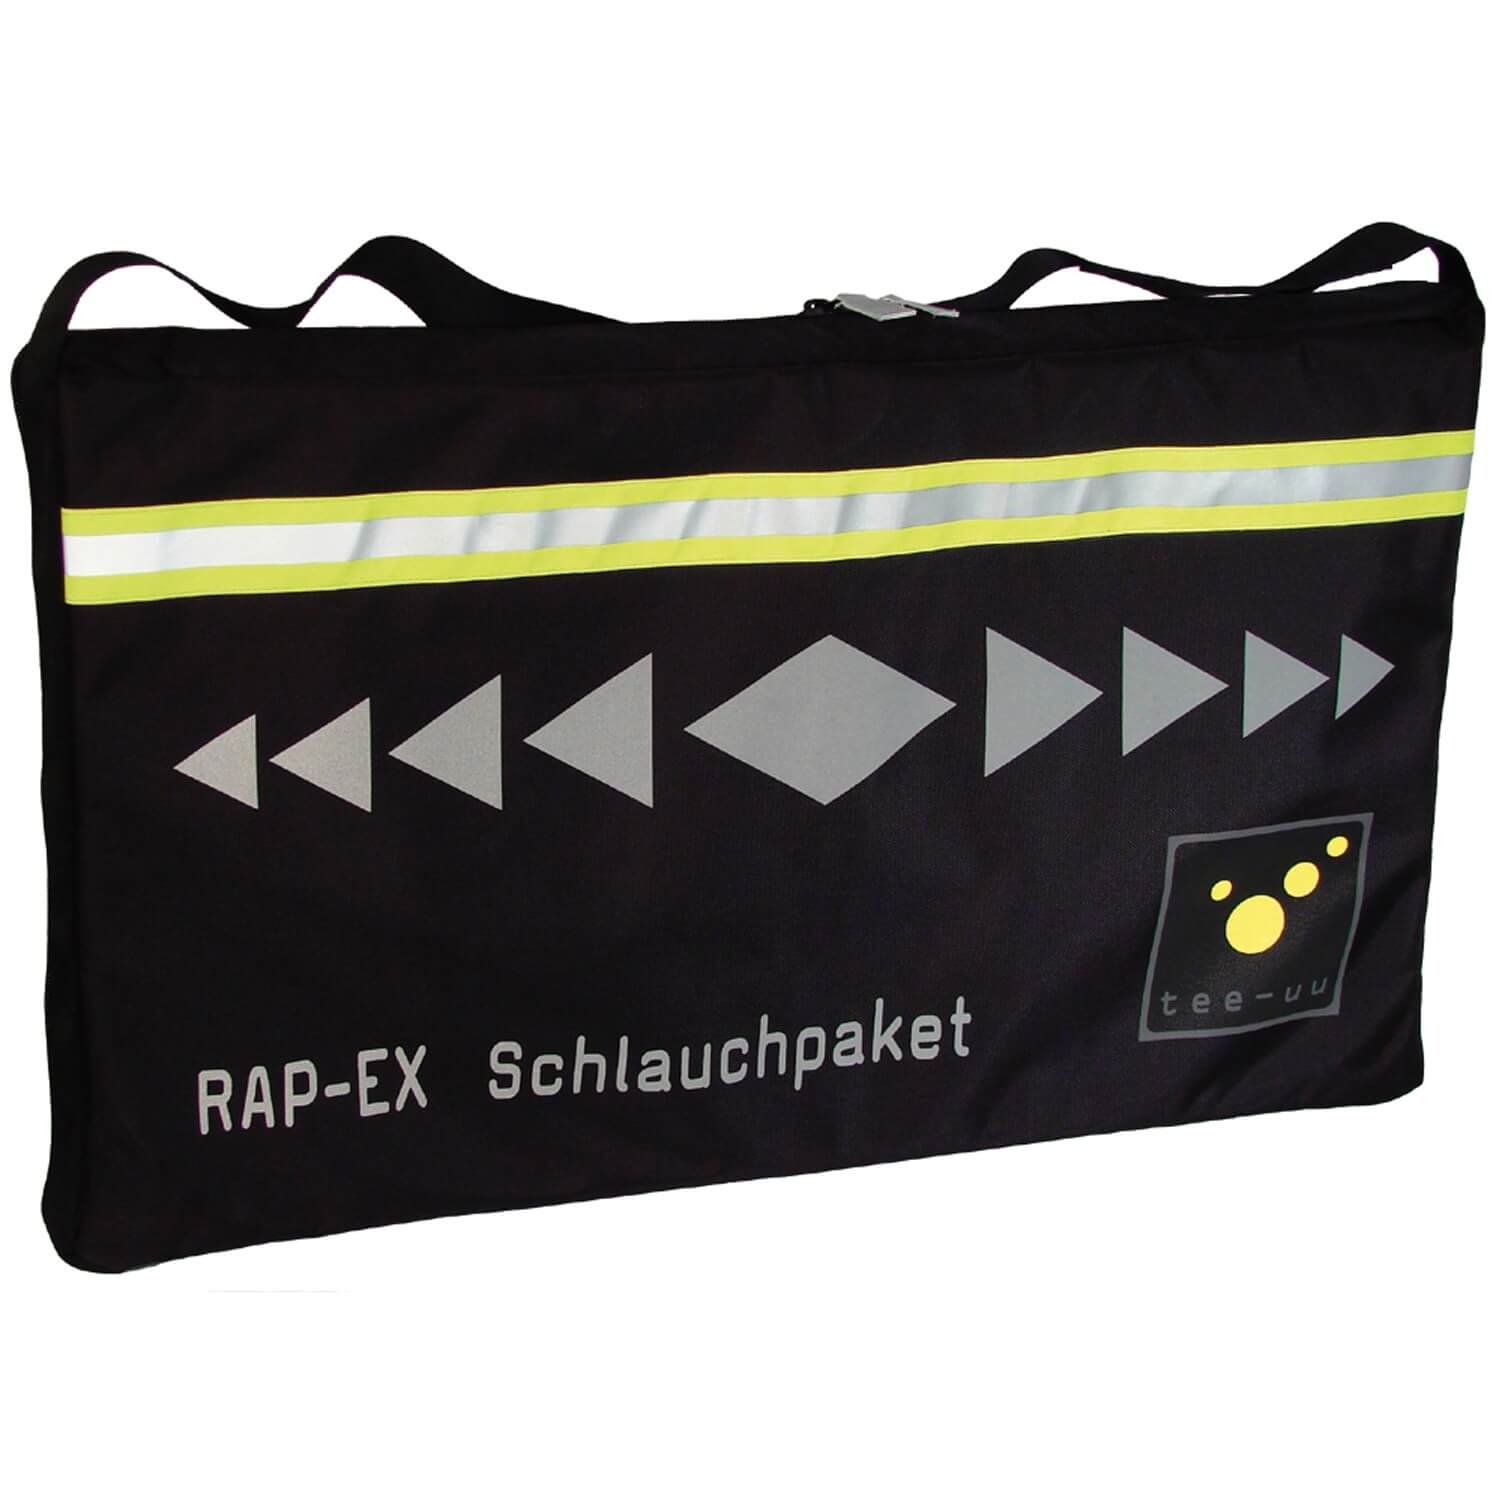 tee-uu RAP-EX Schlauchpaket-Tasche 87 x 52 x 7 cm